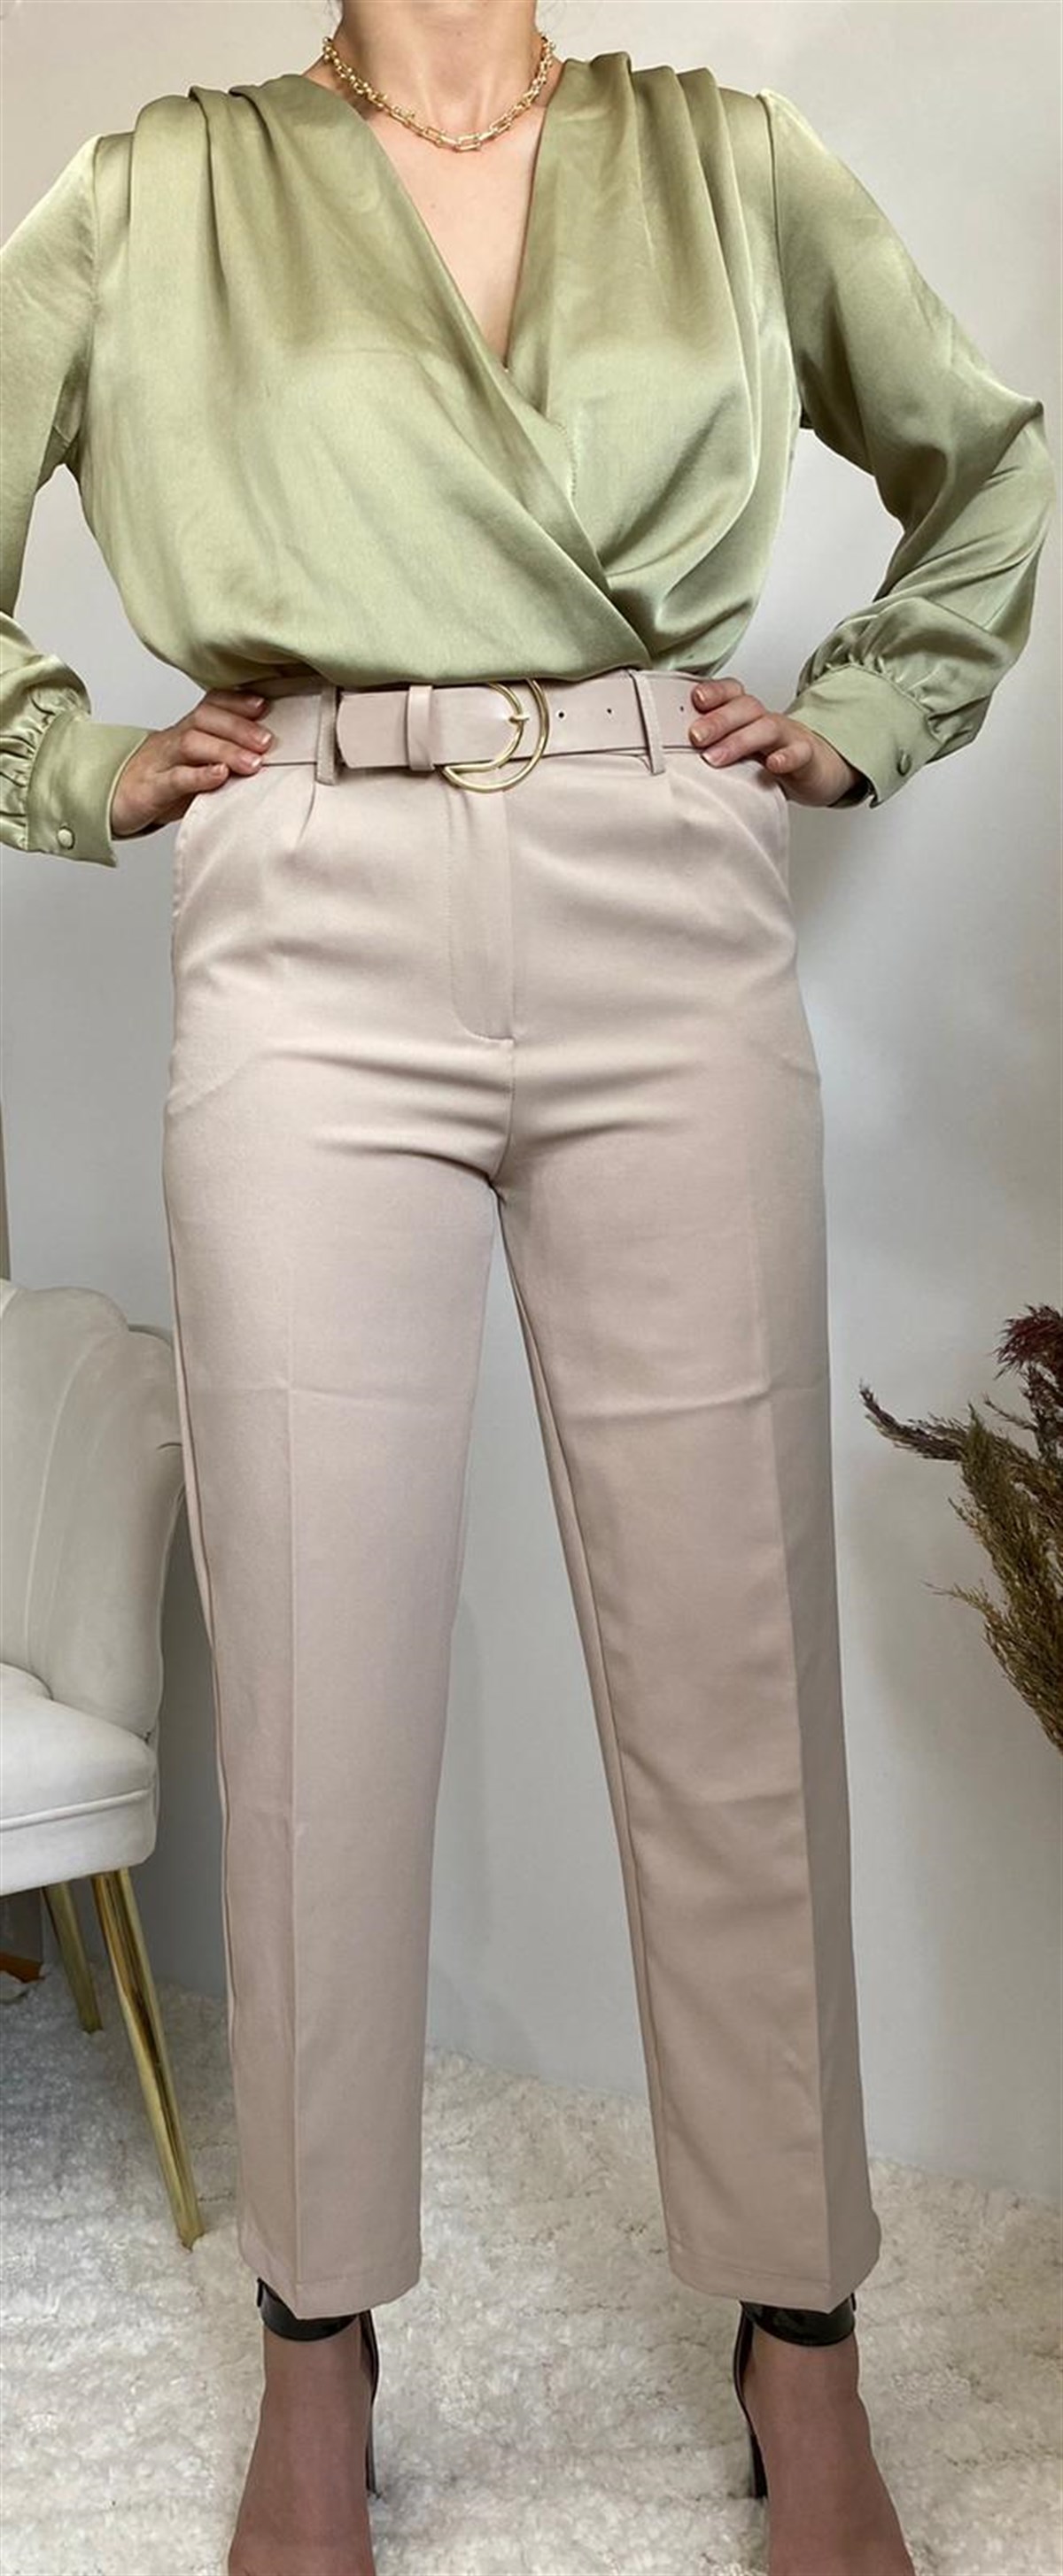 Firesh Krem Rengi Kemer Detaylı Kadın Kumaş Pantolon Pantolon Ürünü Sadece  159,00